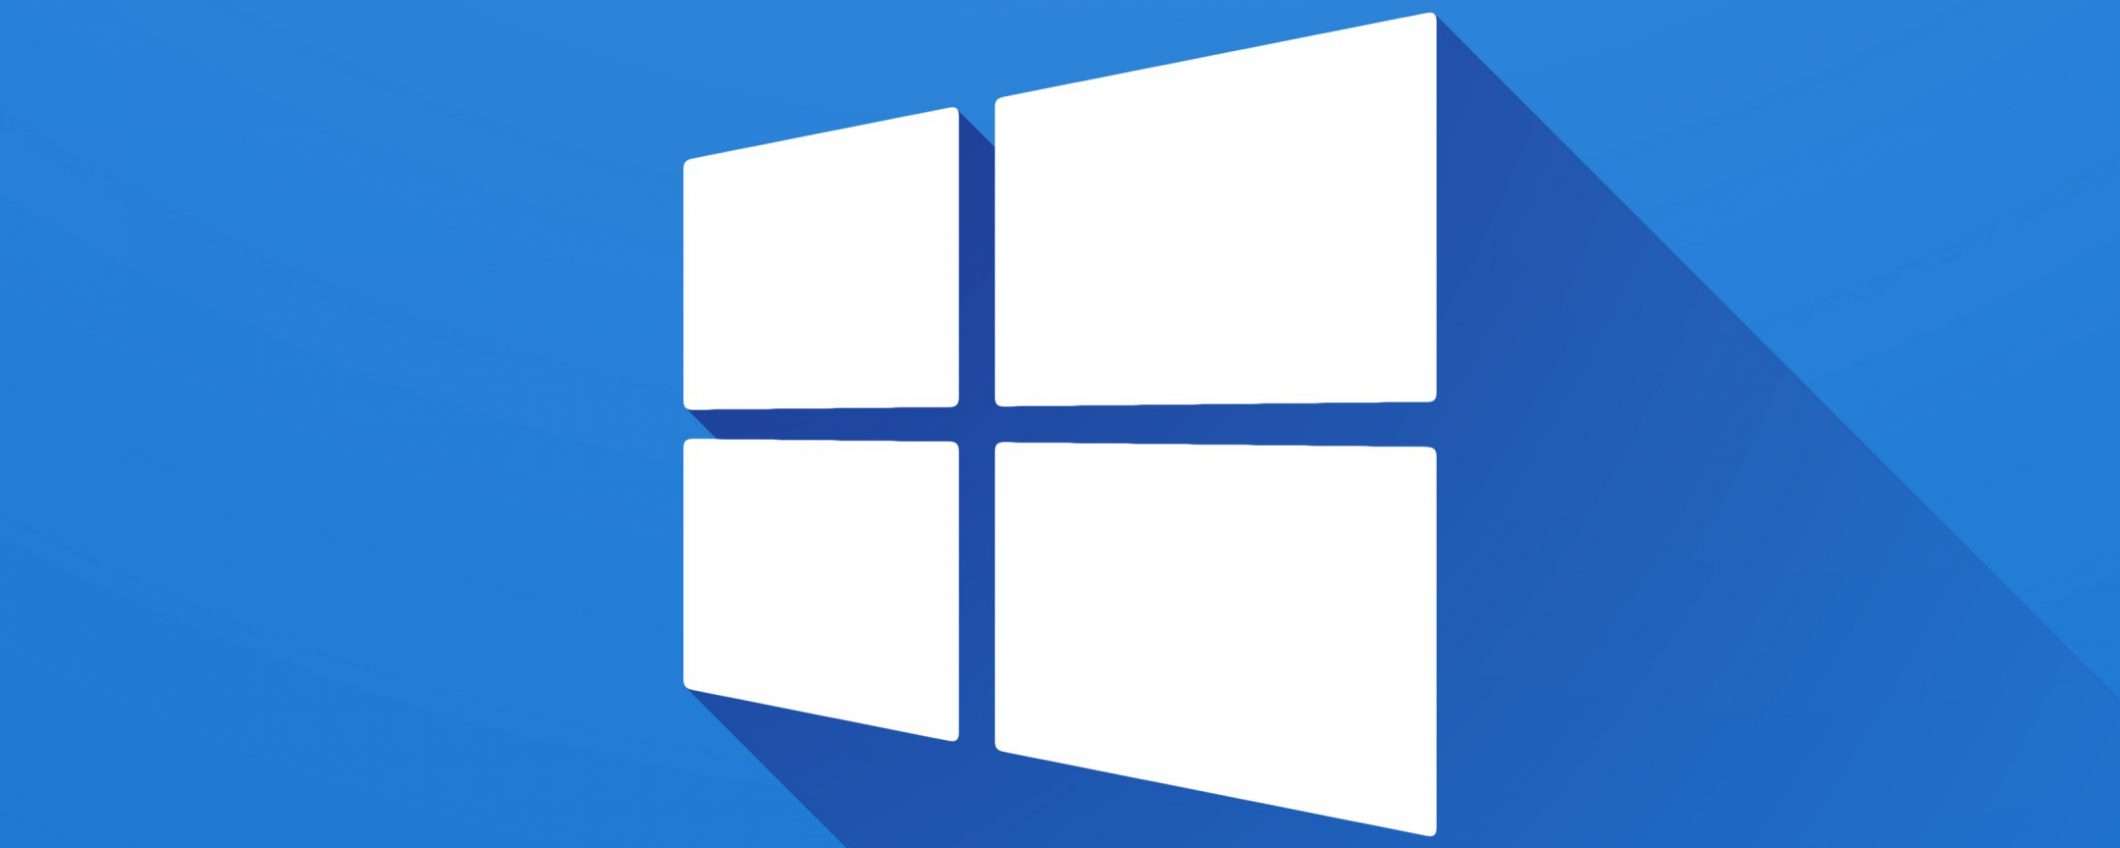 Windows 10: l'update KB4532693 cancella i file